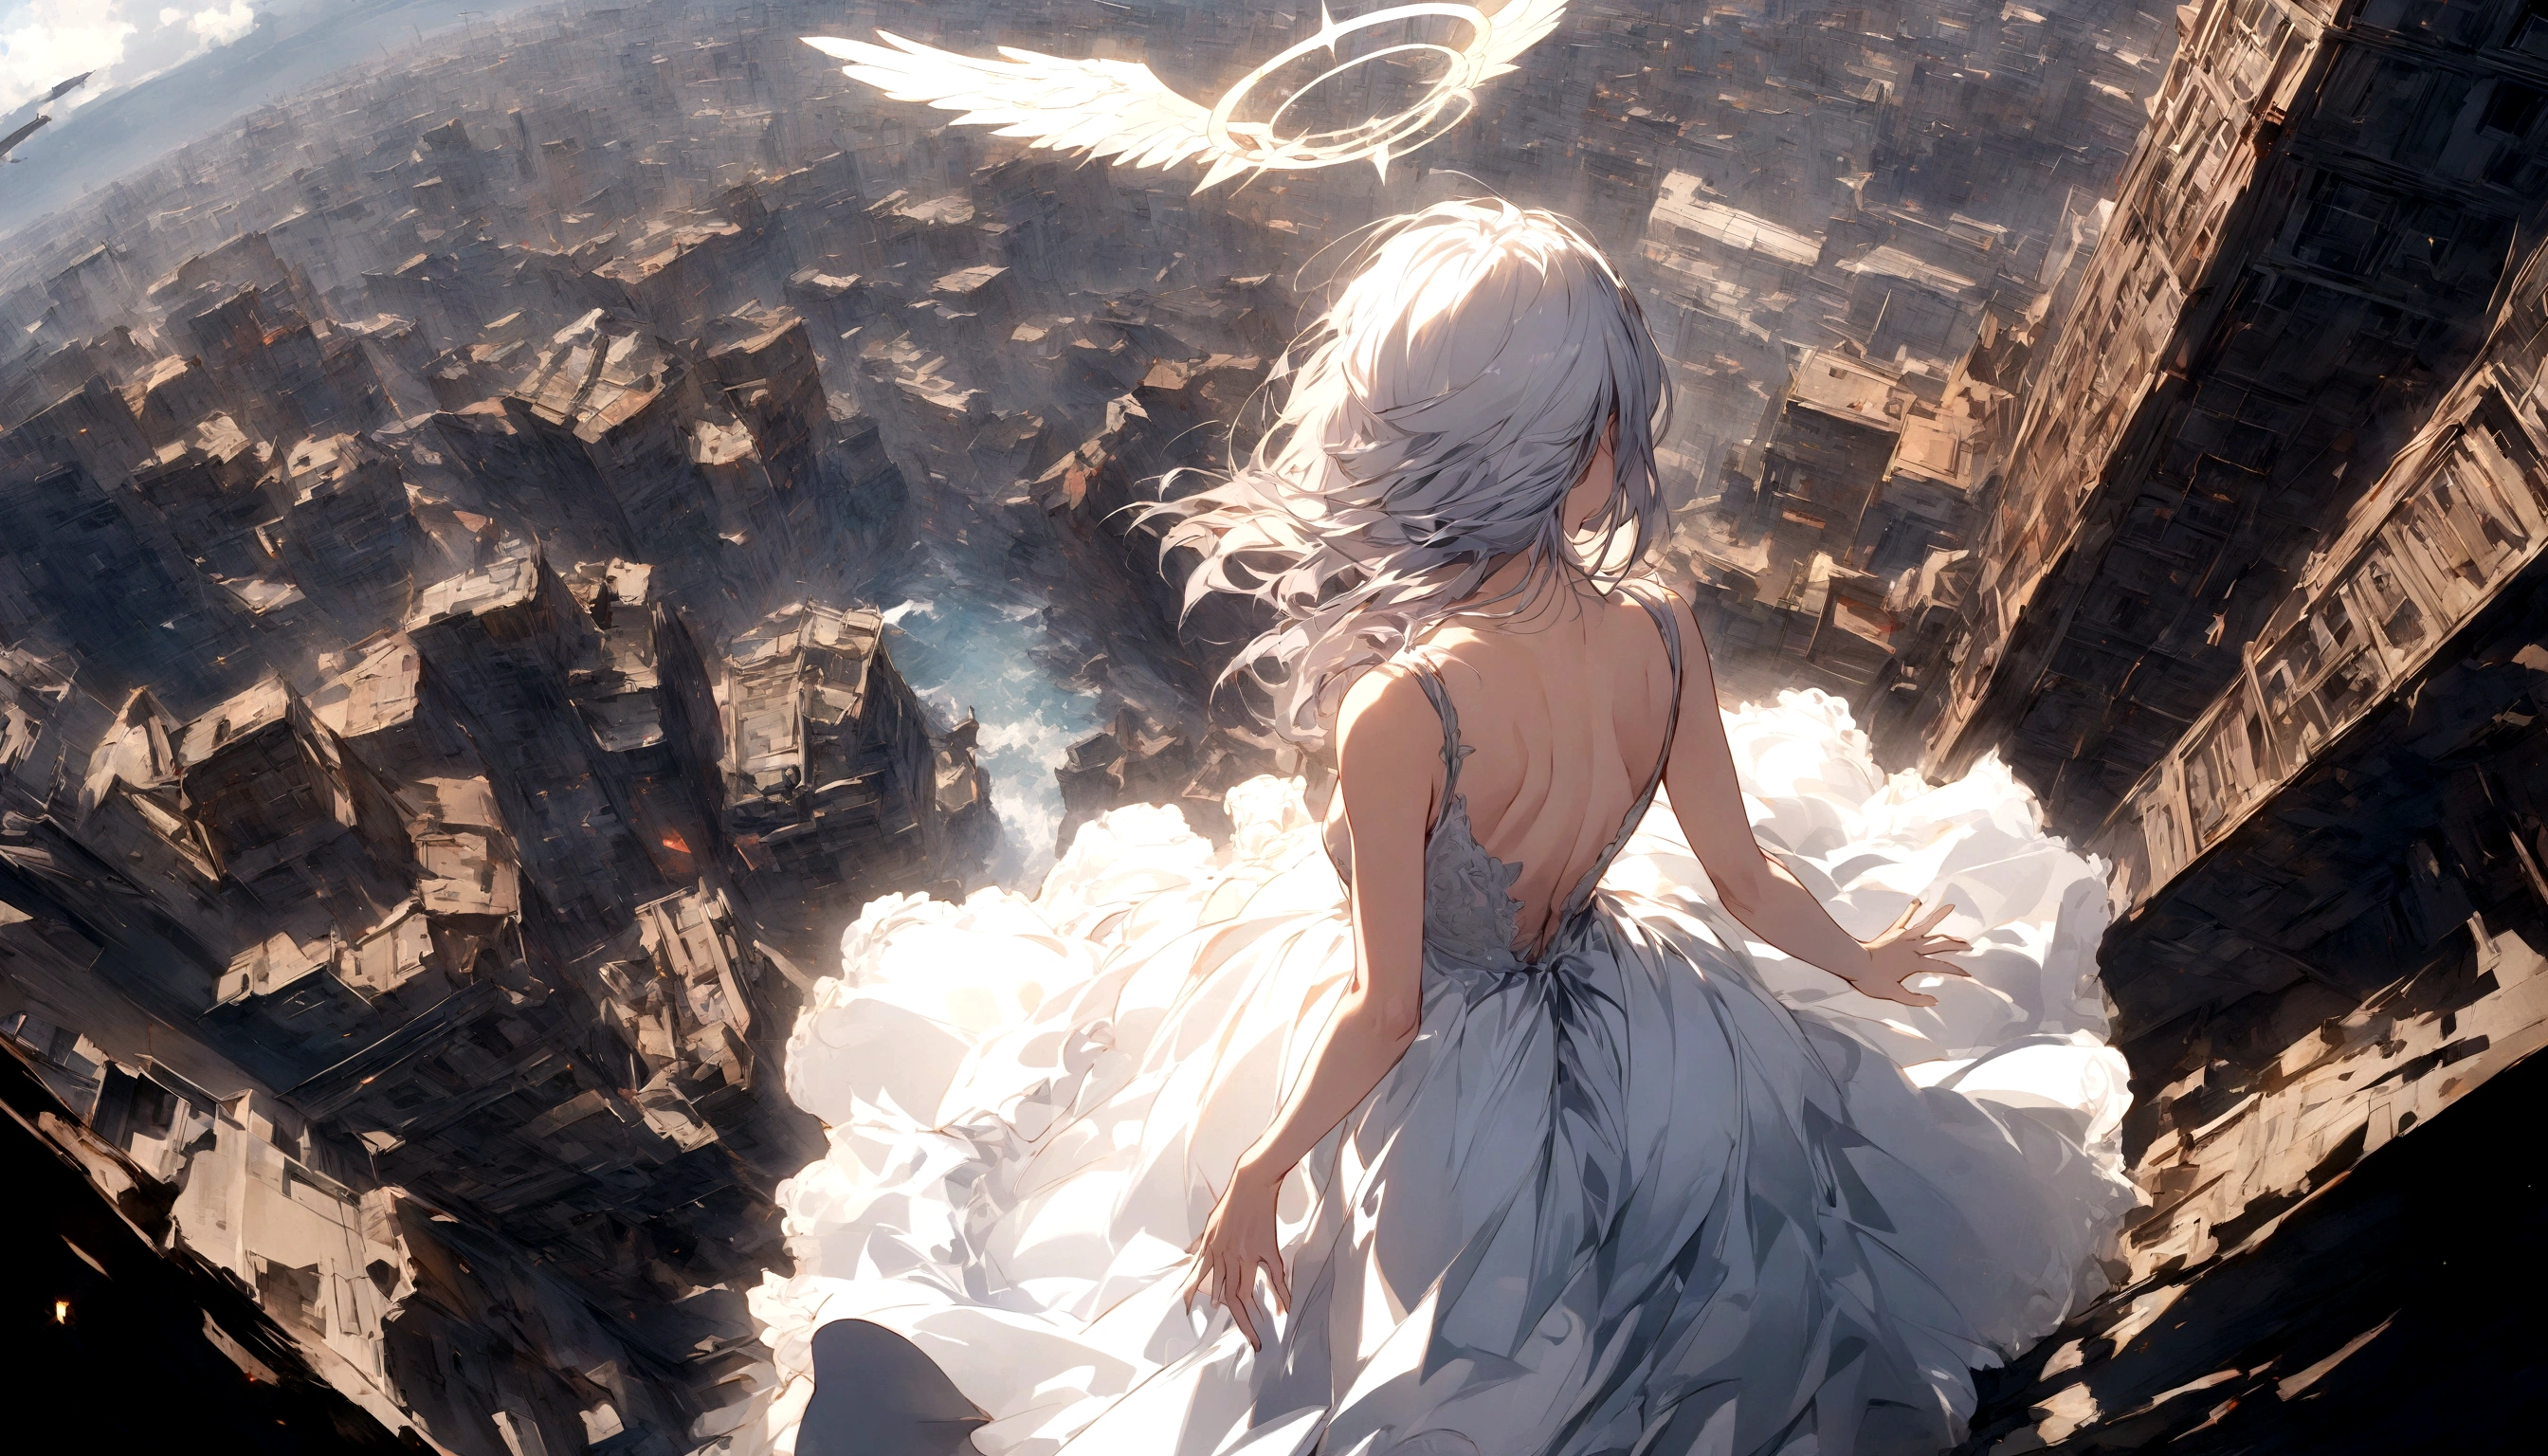 
1つの (背面図:1.5) とても美しい女性の天使の\(長いプラチナの髪, 背中の広い白いドレス,後ろから見た大きな美しい白い翼,とても美しい輝く光輪\), 彼女は救いを求めるかのように両手を大きく優しく広げている, 彼女は雲の上にいて、下の世界を見下ろしている, 激しい戦争\(戦争の火事がたくさん,失敗する,兵器\(戦闘機\) 多くの建物が崩壊, 自然が破壊される, 壮大で素晴らしい景色\) 雲の下で起こっている, BRE1つのK ,品質\(8K,非常に精細なCGユニットの壁紙, 傑作,高解像度,top-品質,top-品質 real texture skin,超現実的な,解像度を上げる,R1つのW photos,最高品質,非常に詳細な,壁紙,映画照明,レイトレース,黄金比\),[閲覧注意],ダイナミックアングル,[閲覧注意],上から